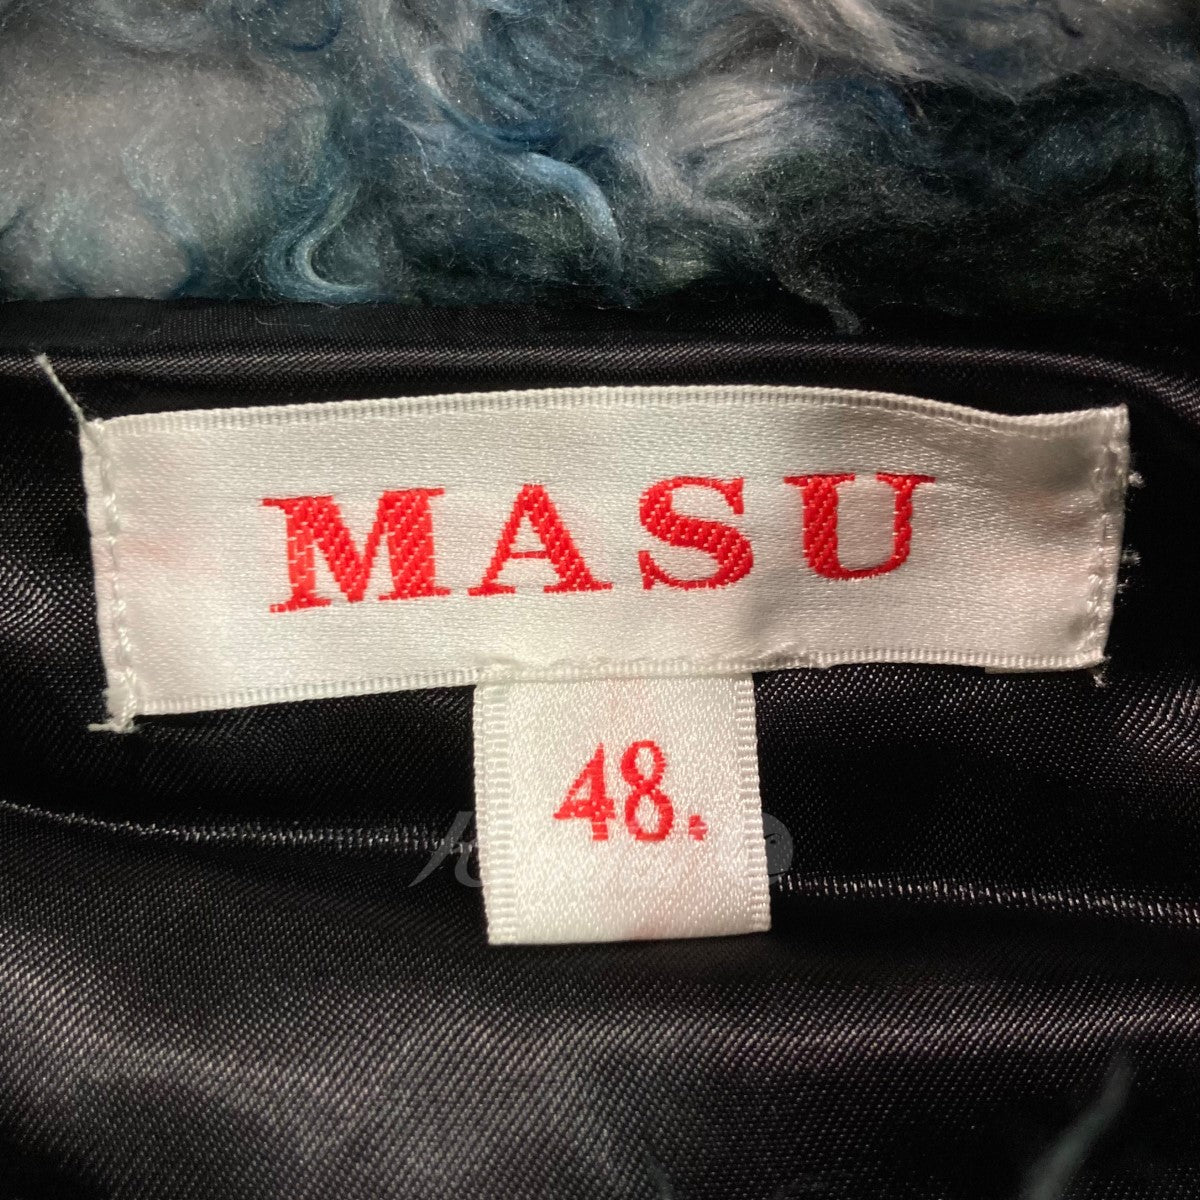 MASU(エムエーエスユー) 22AW「FUTURE X」フェイクファーブルゾン